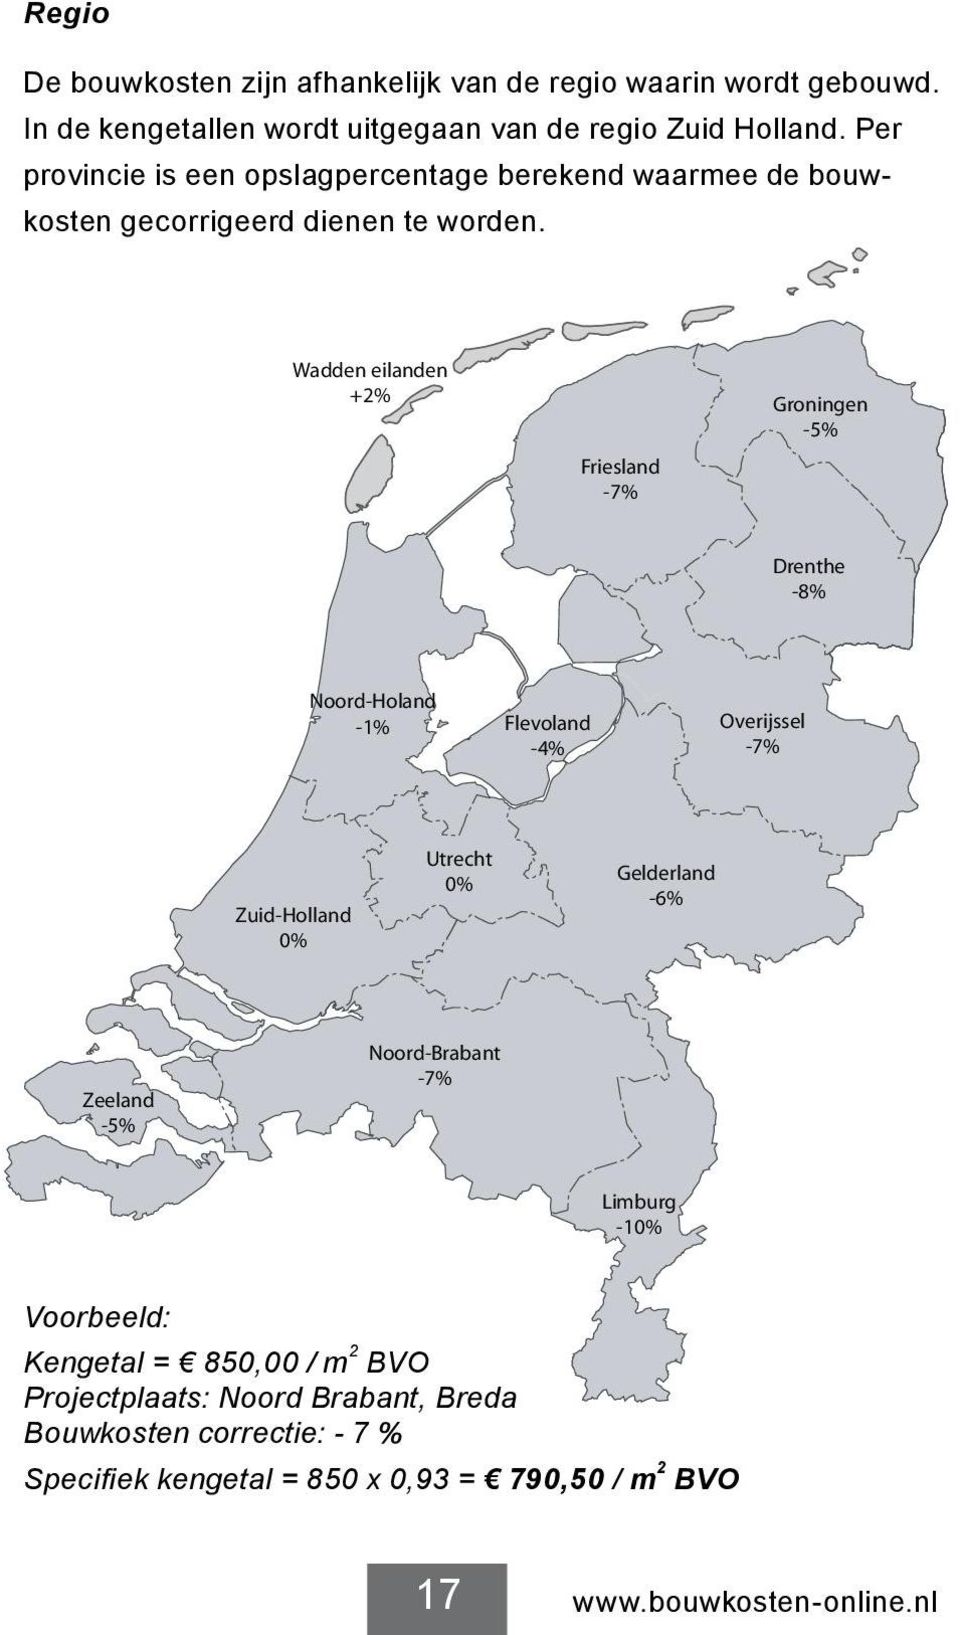 Wadden eilanden +2% Friesland -7% Groningen -5% Drenthe -8% Noord-Holand -1% Flevoland -4% Overijssel -7% Zuid-Holland 0% Utrecht 0% Gelderland -6%